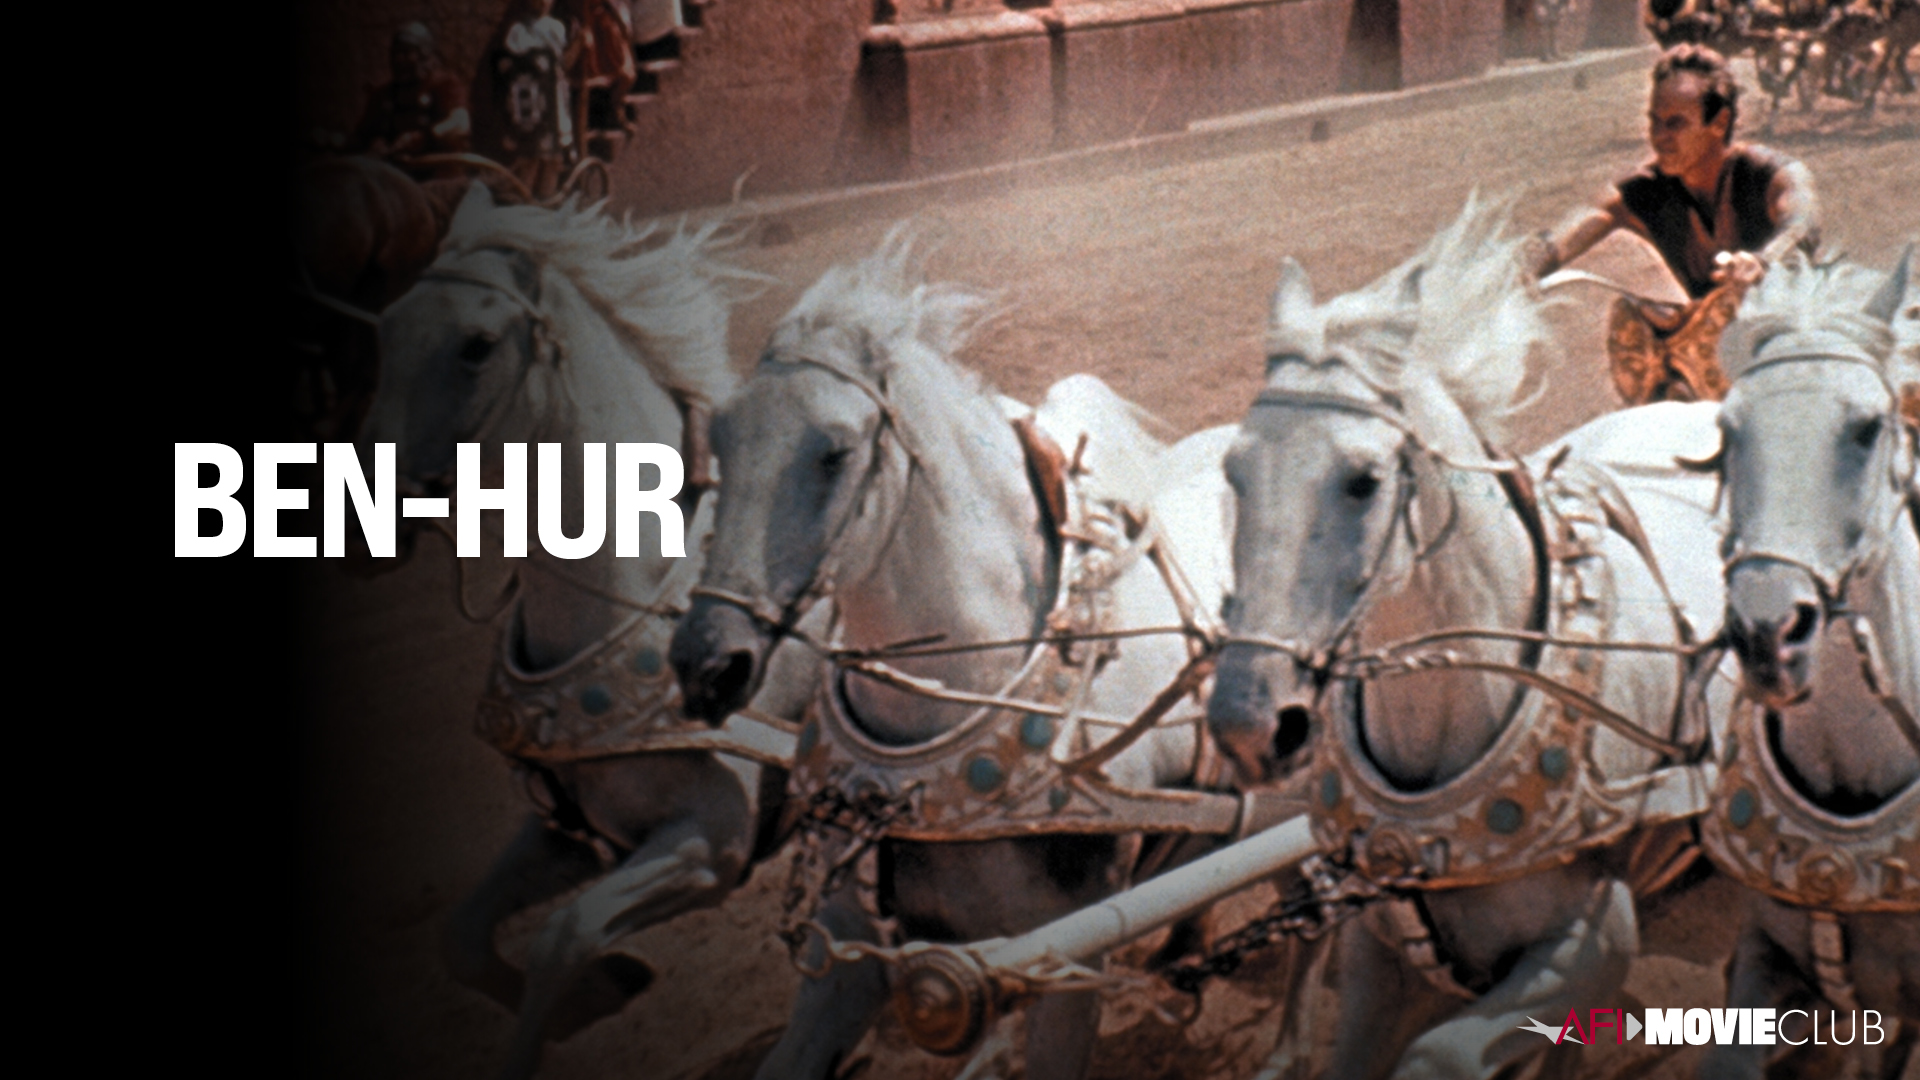 Ben-Hur Film Still - Charlton Heston